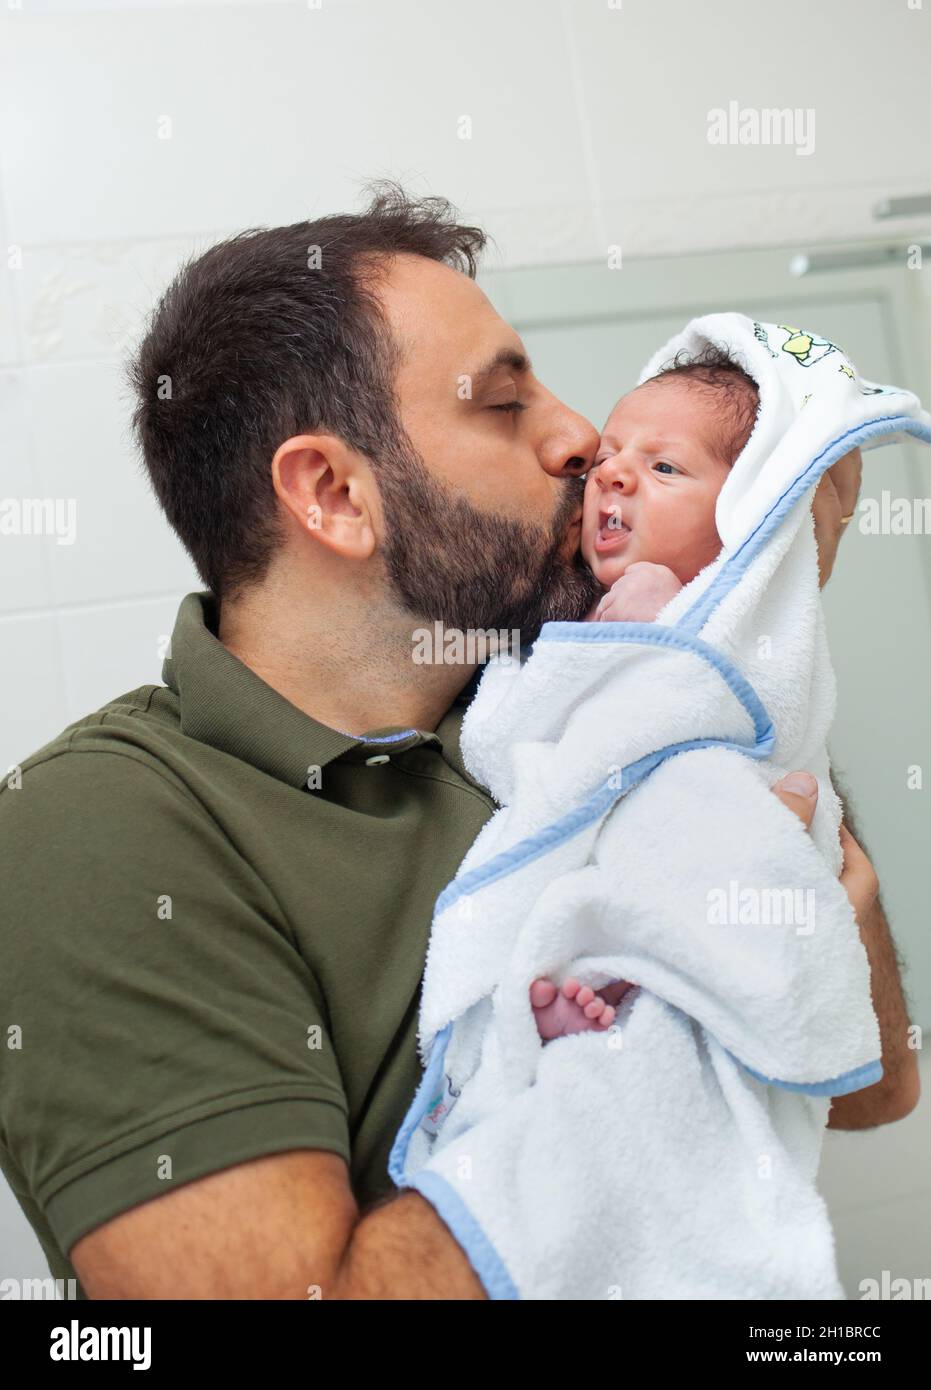 Primer baño de bebé recién nacido. El bebé está en el albornoz en los brazos de su padre. Foto de stock